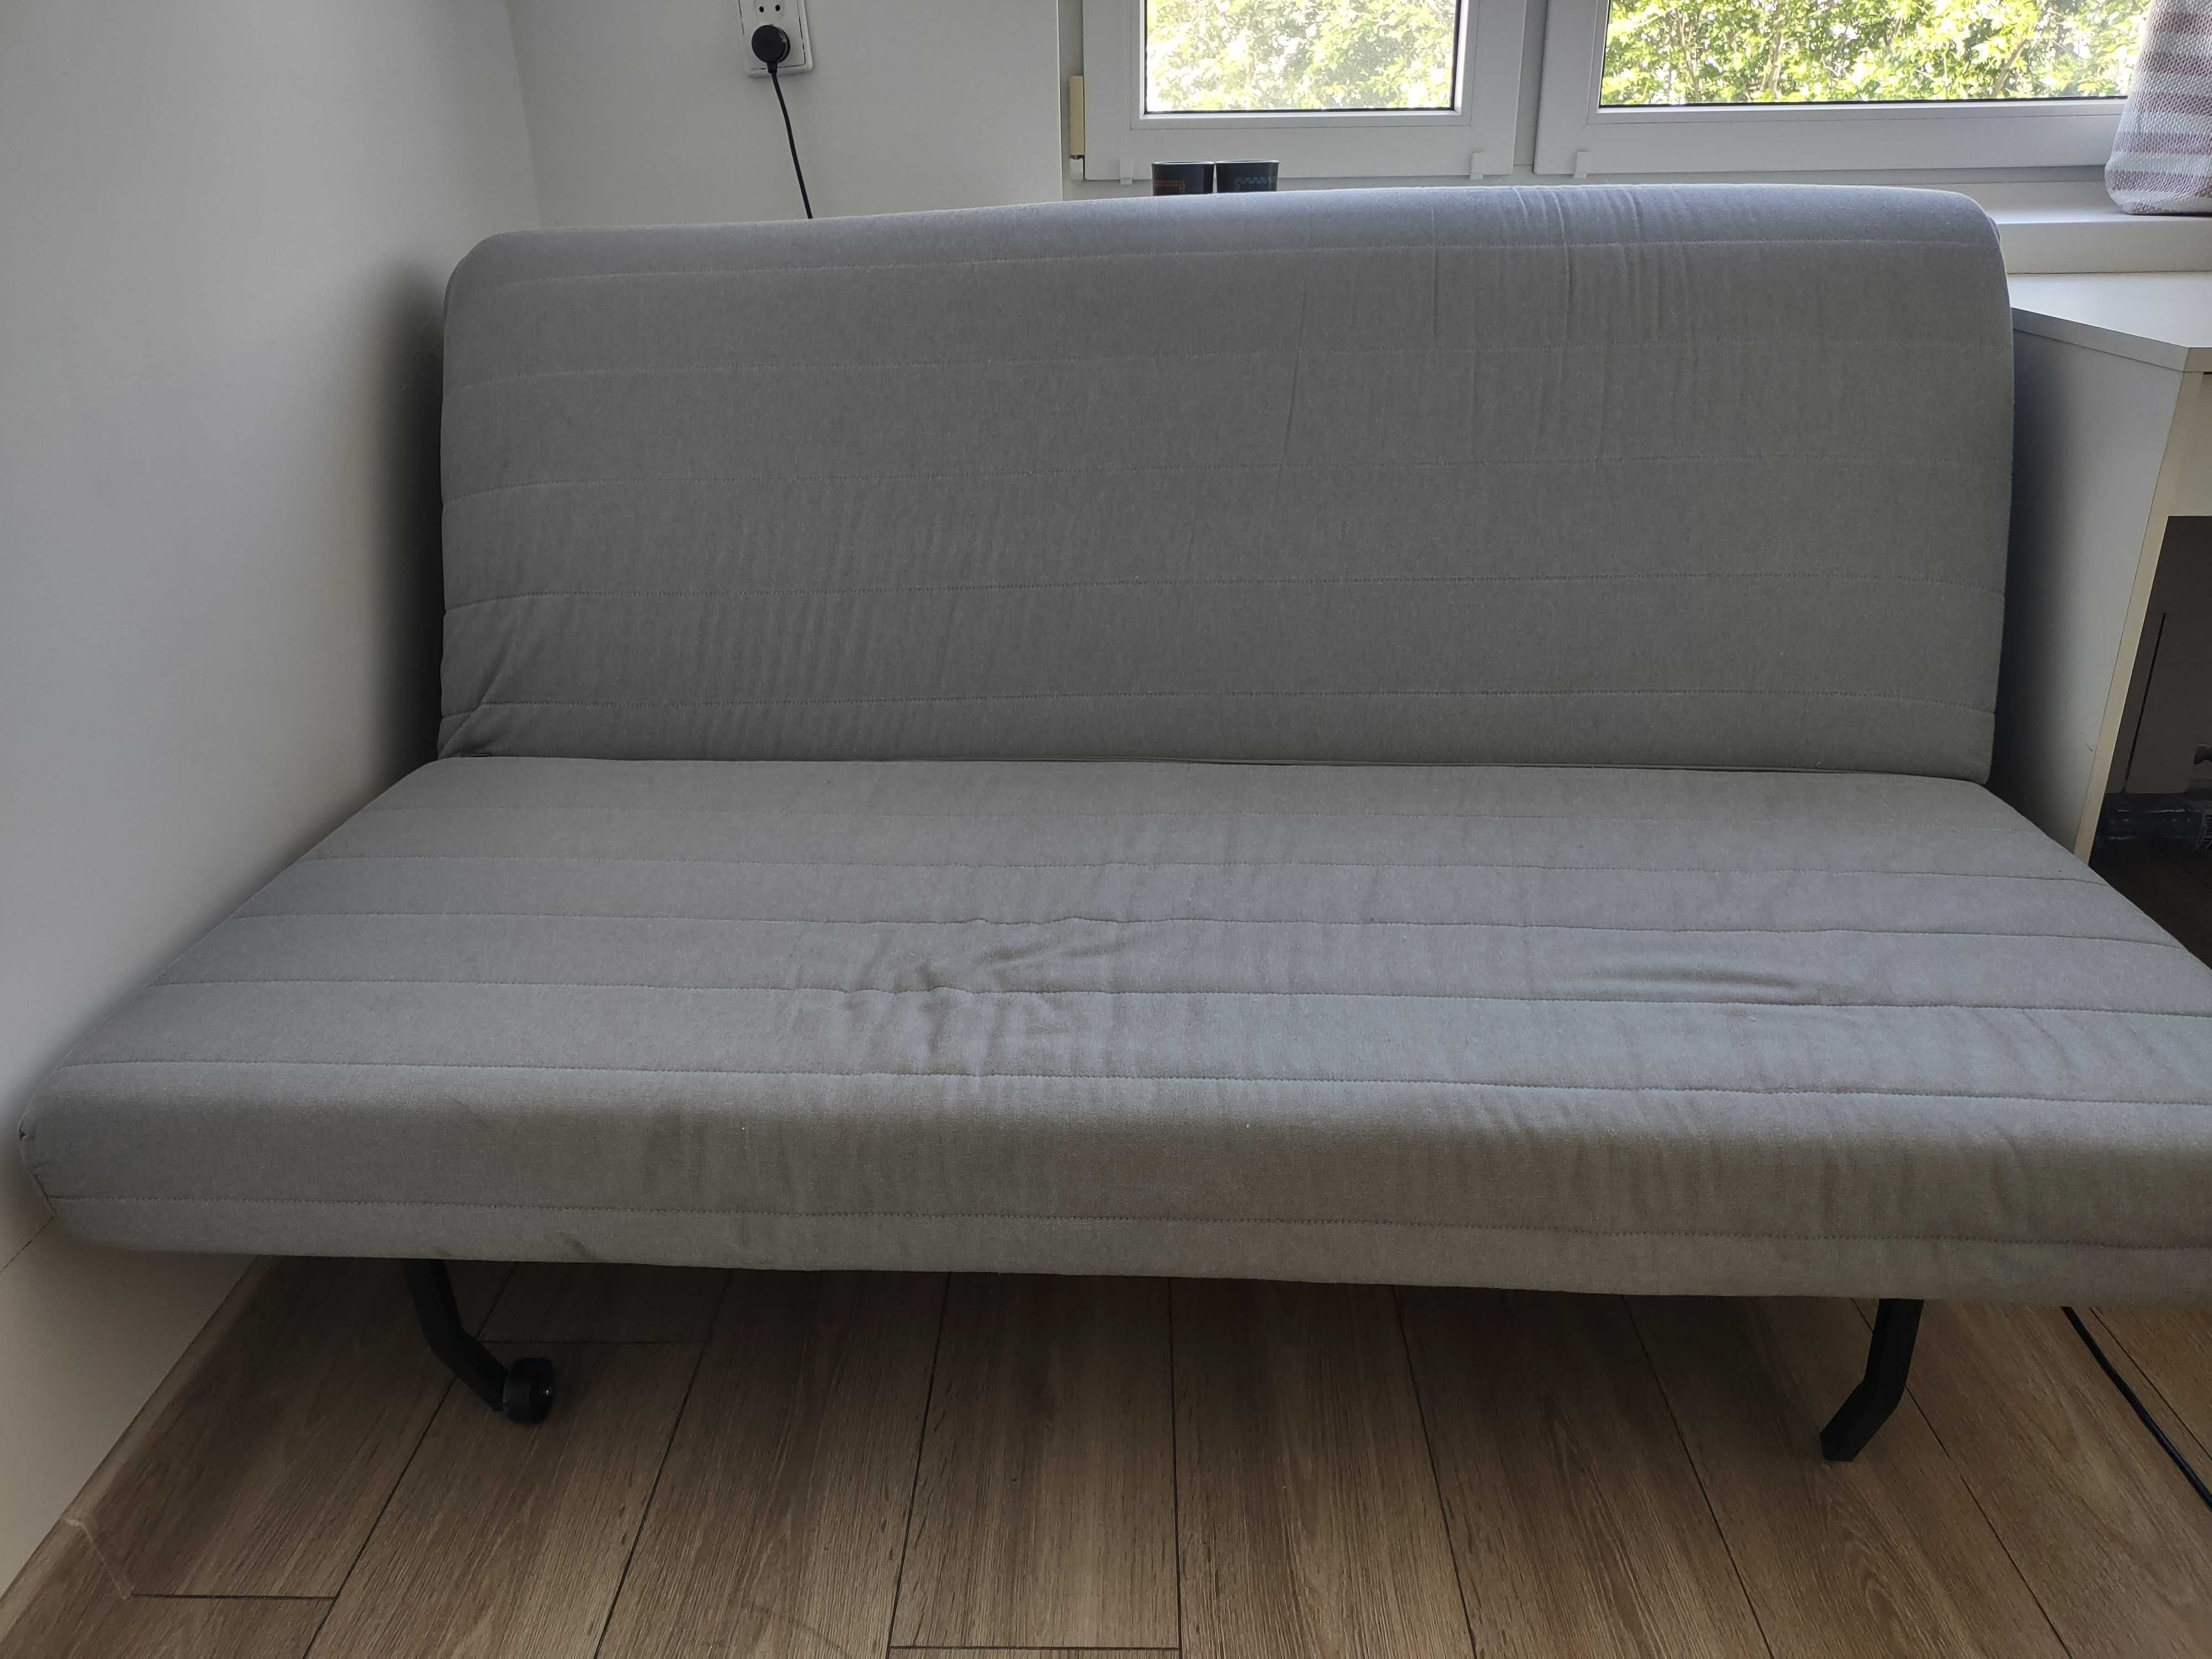 Sofa rozkładana dwuosobowa